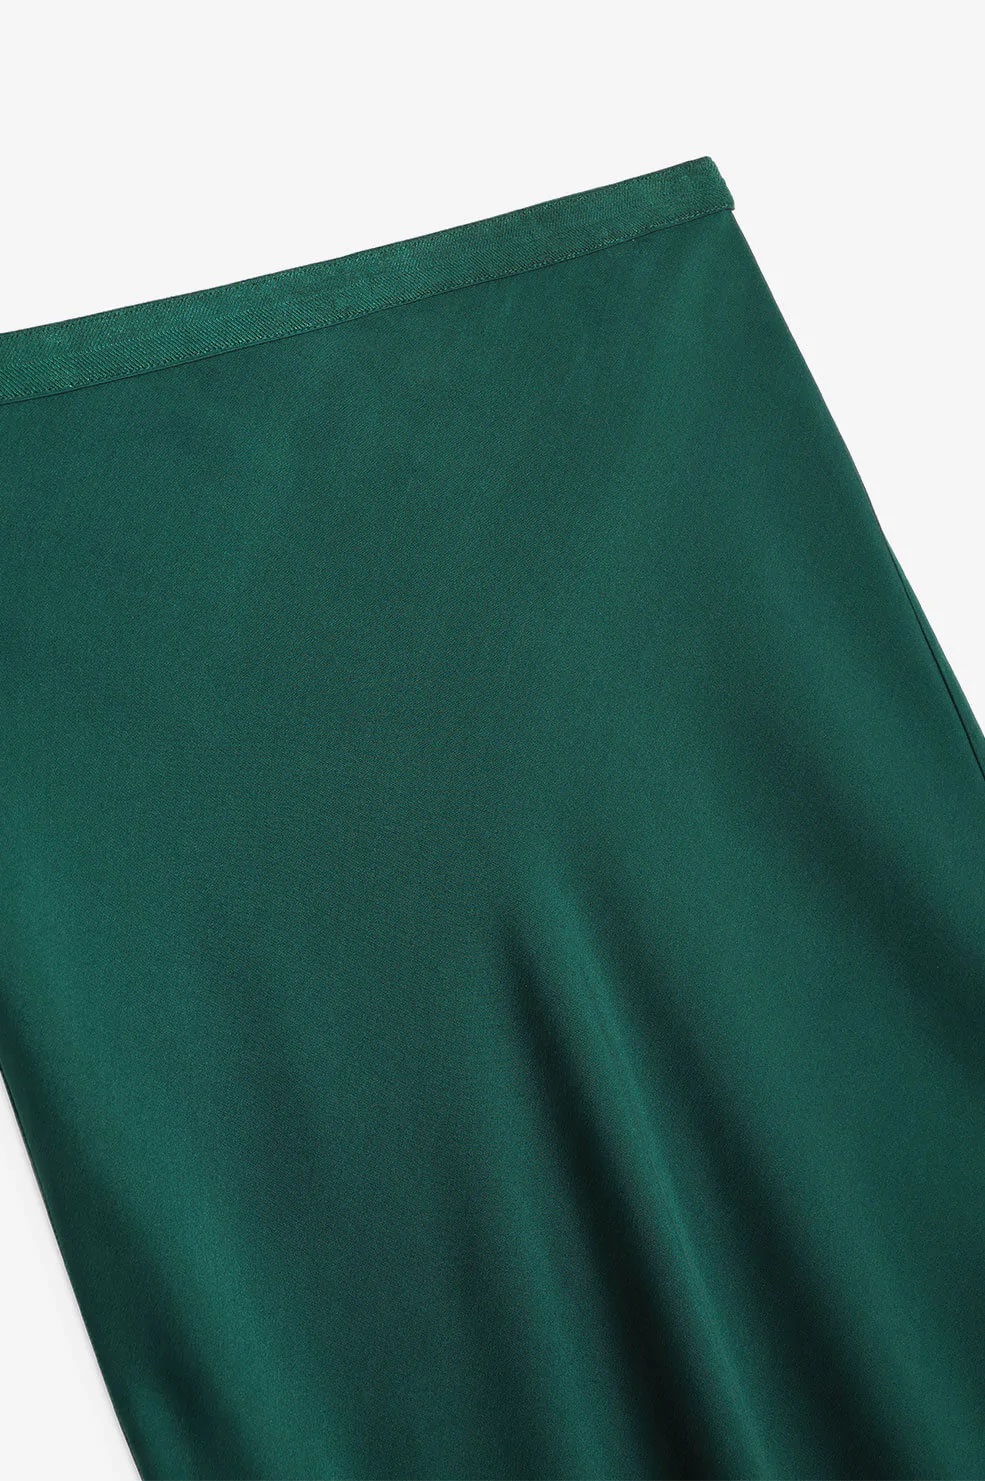 Anine Bing Silk Skirt Erin in Emerald Green